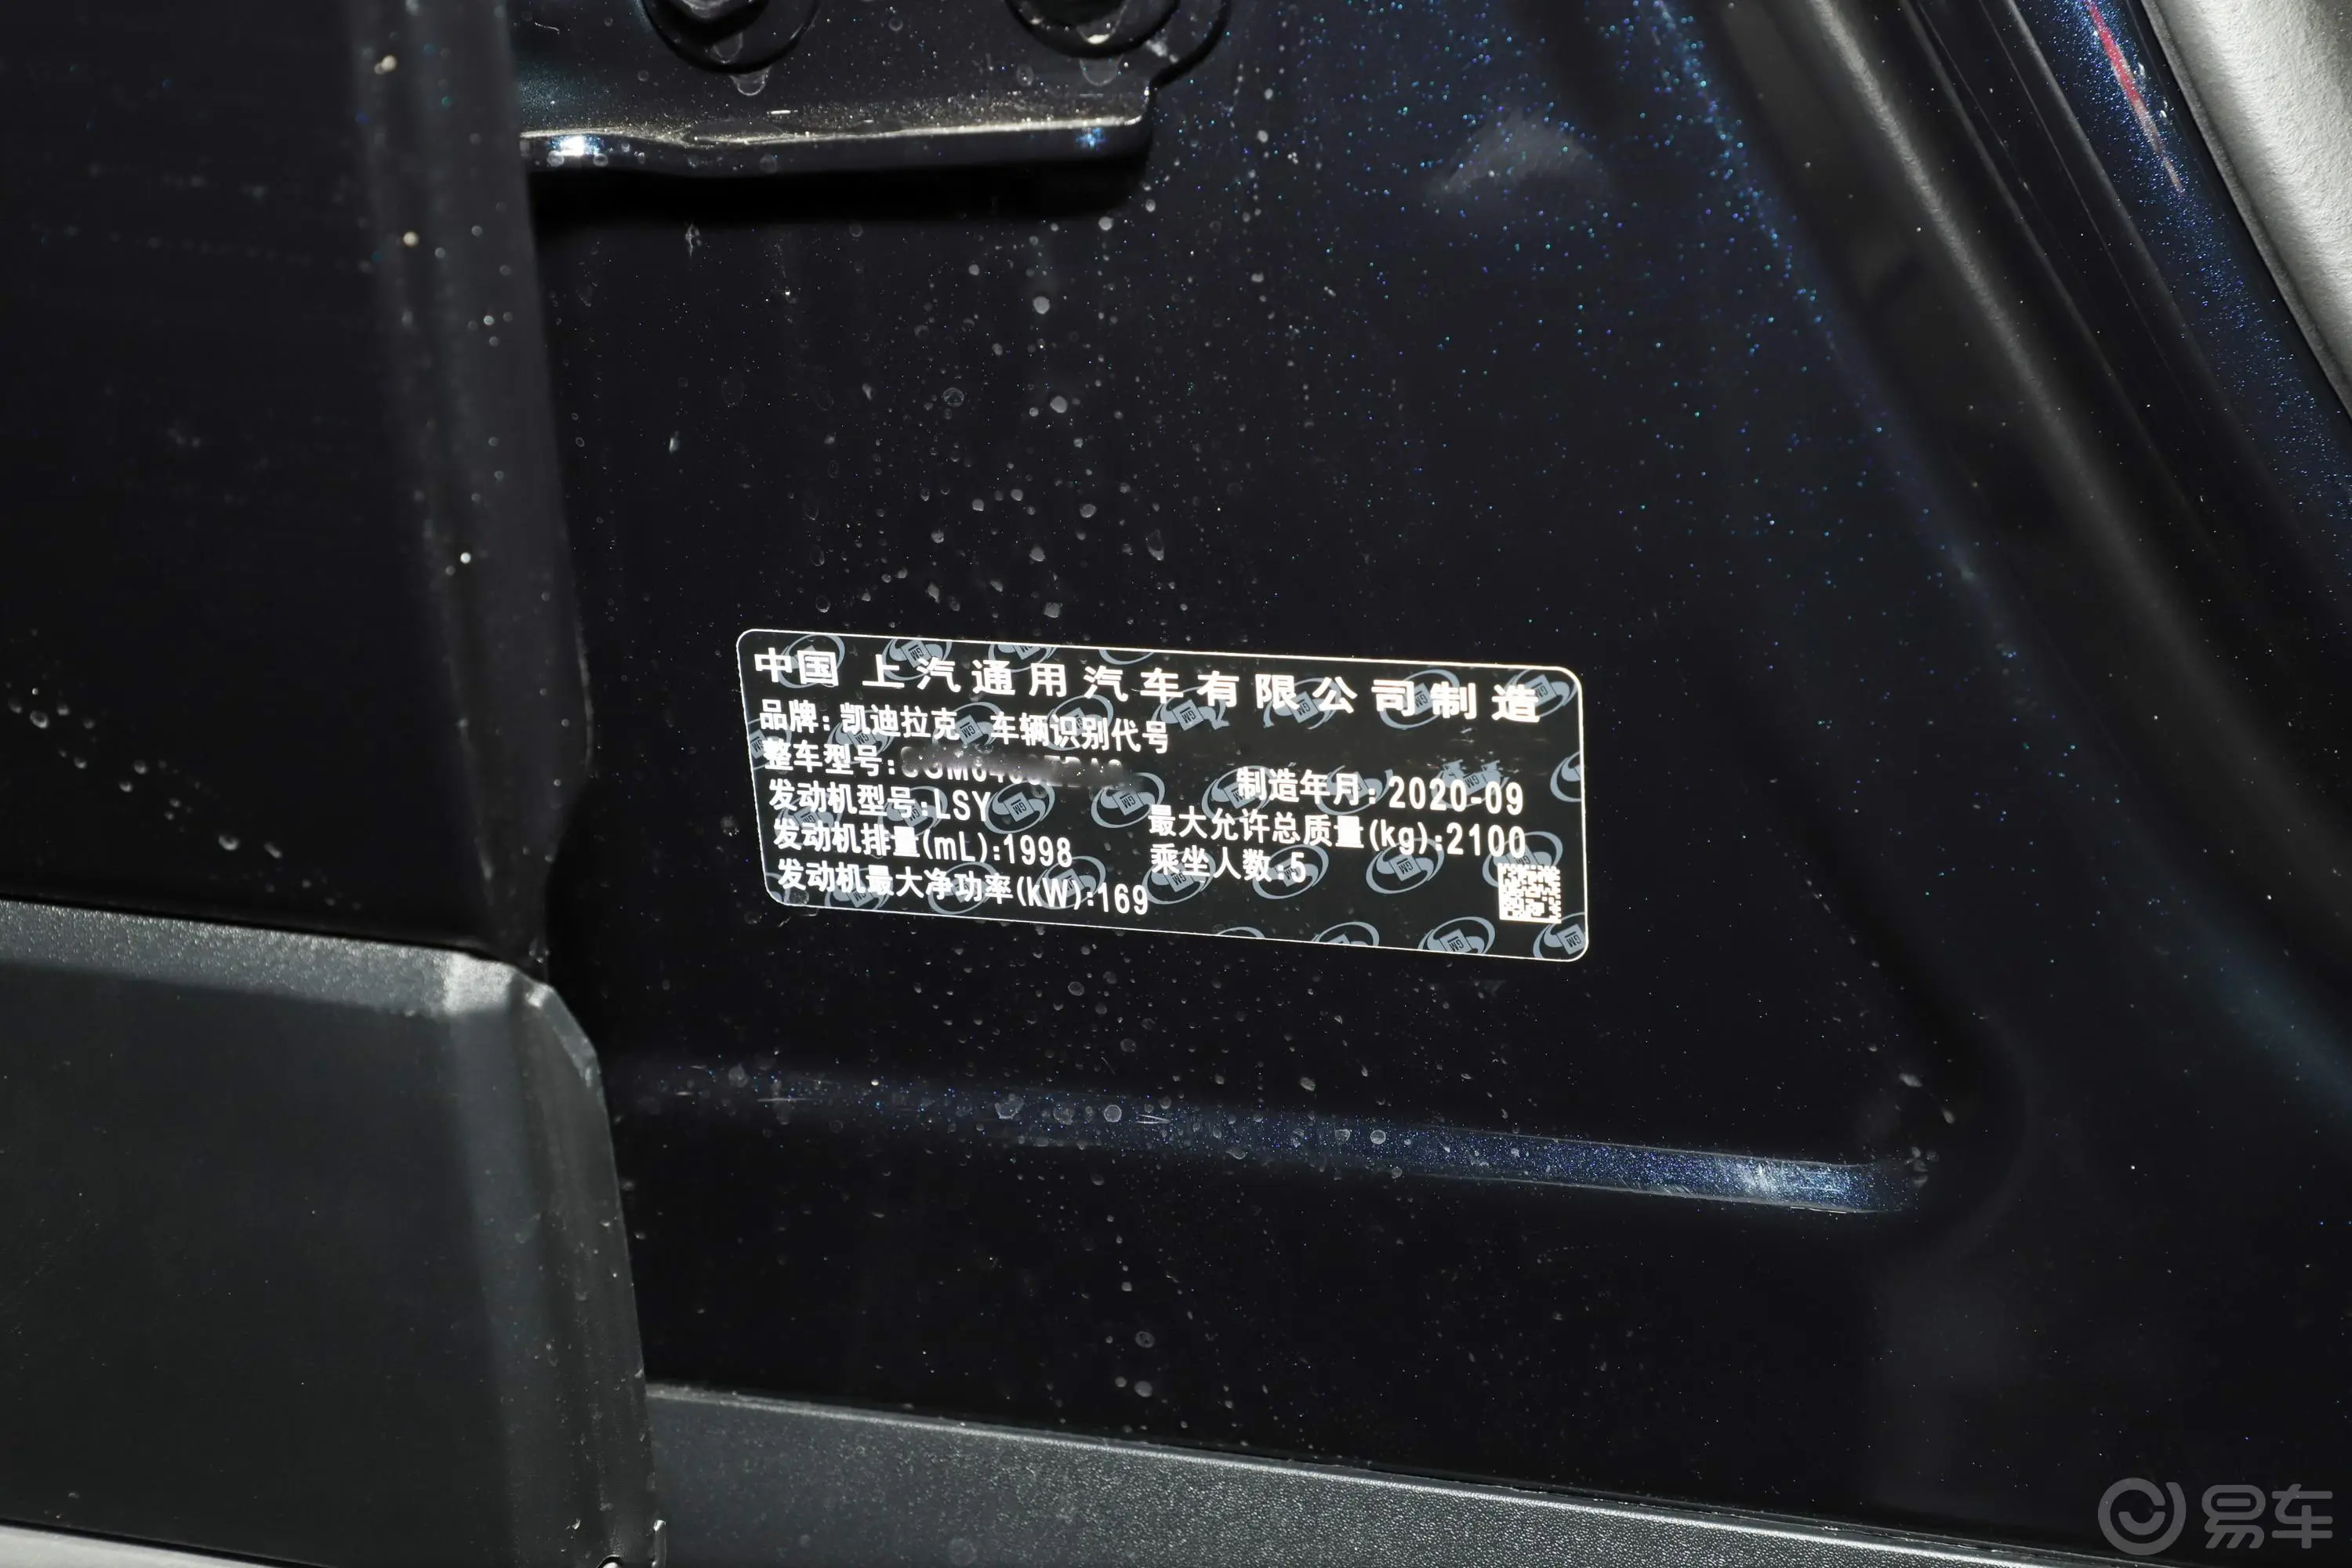 凯迪拉克XT428T 四驱 铂金运动版车辆信息铭牌